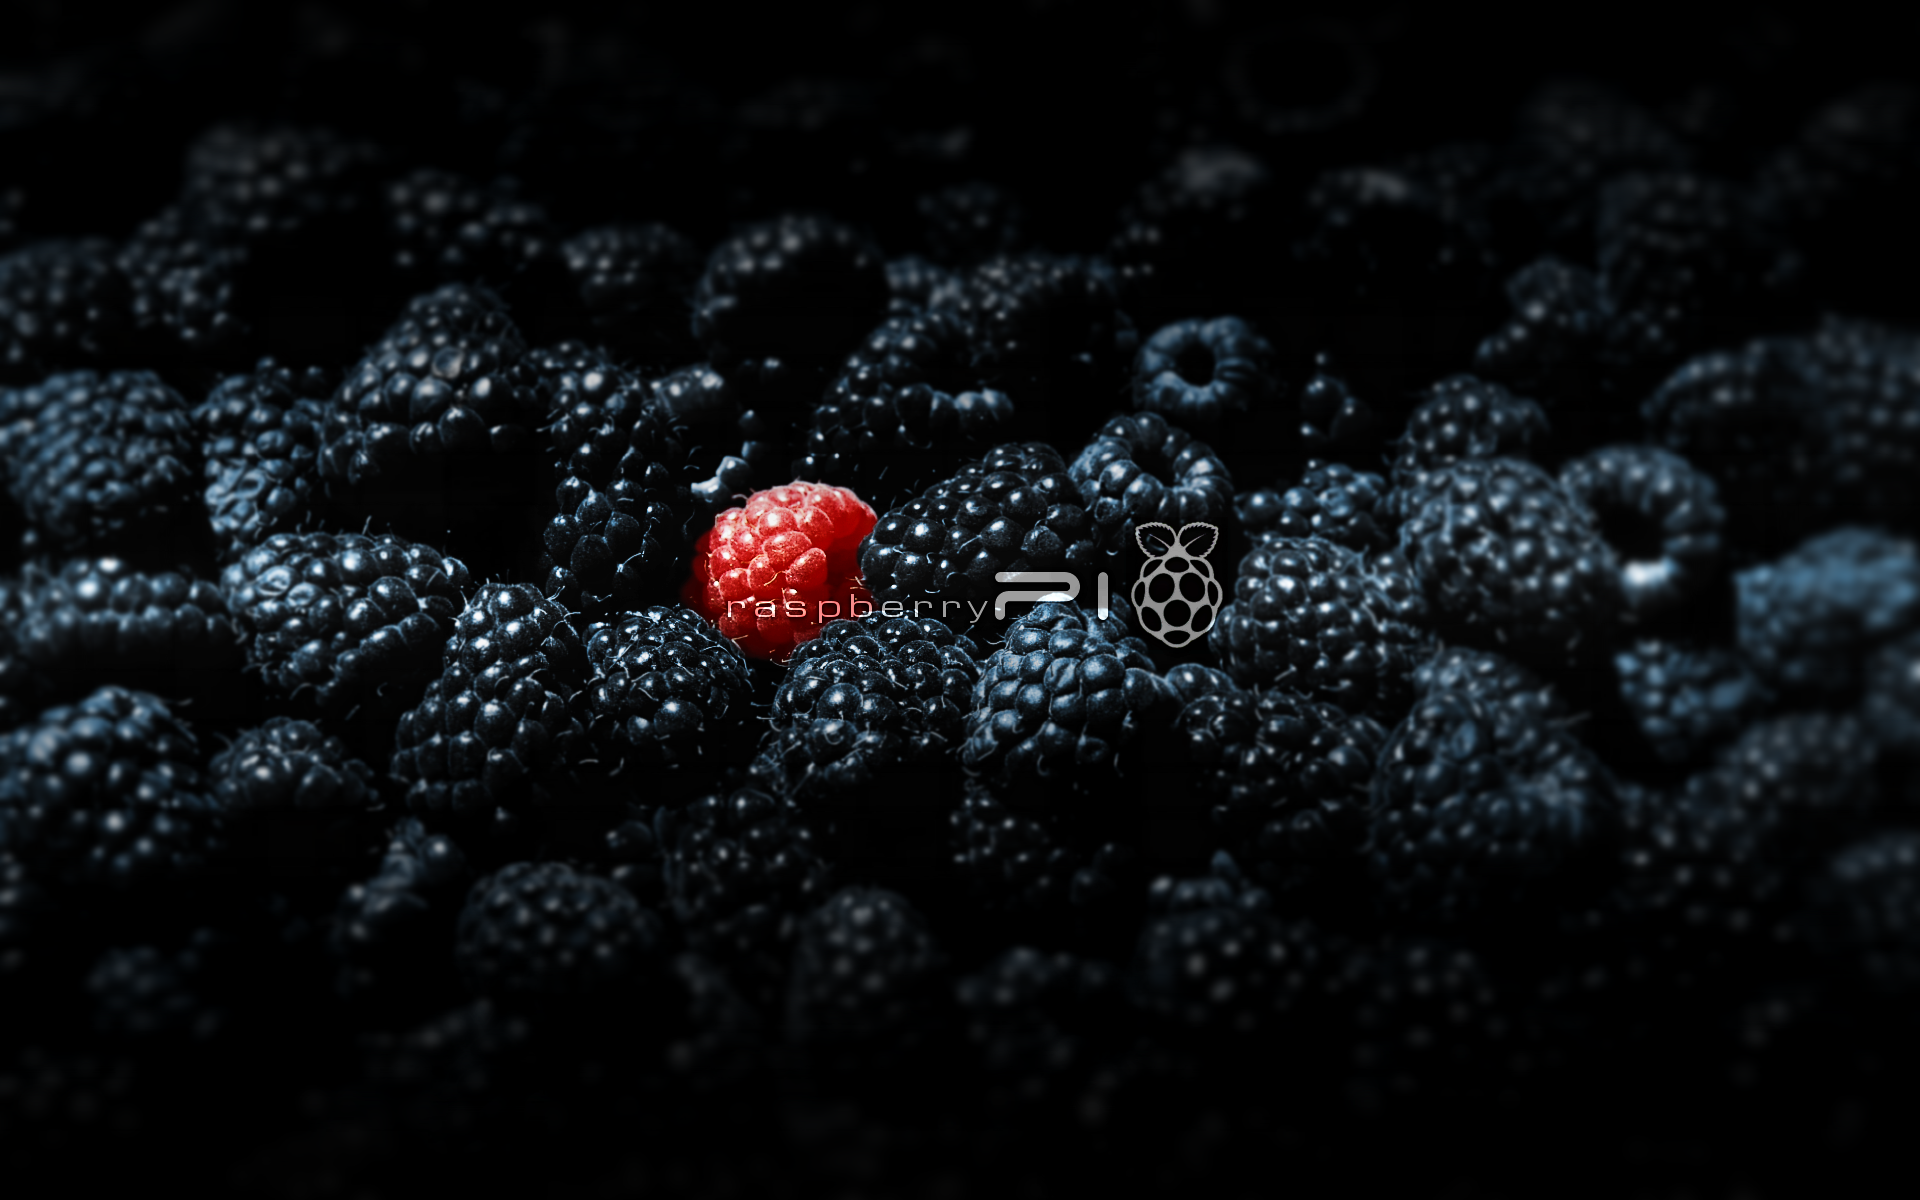 raspberry pi fondo de pantalla,mora,baya,negro,rojo,frutti di bosco